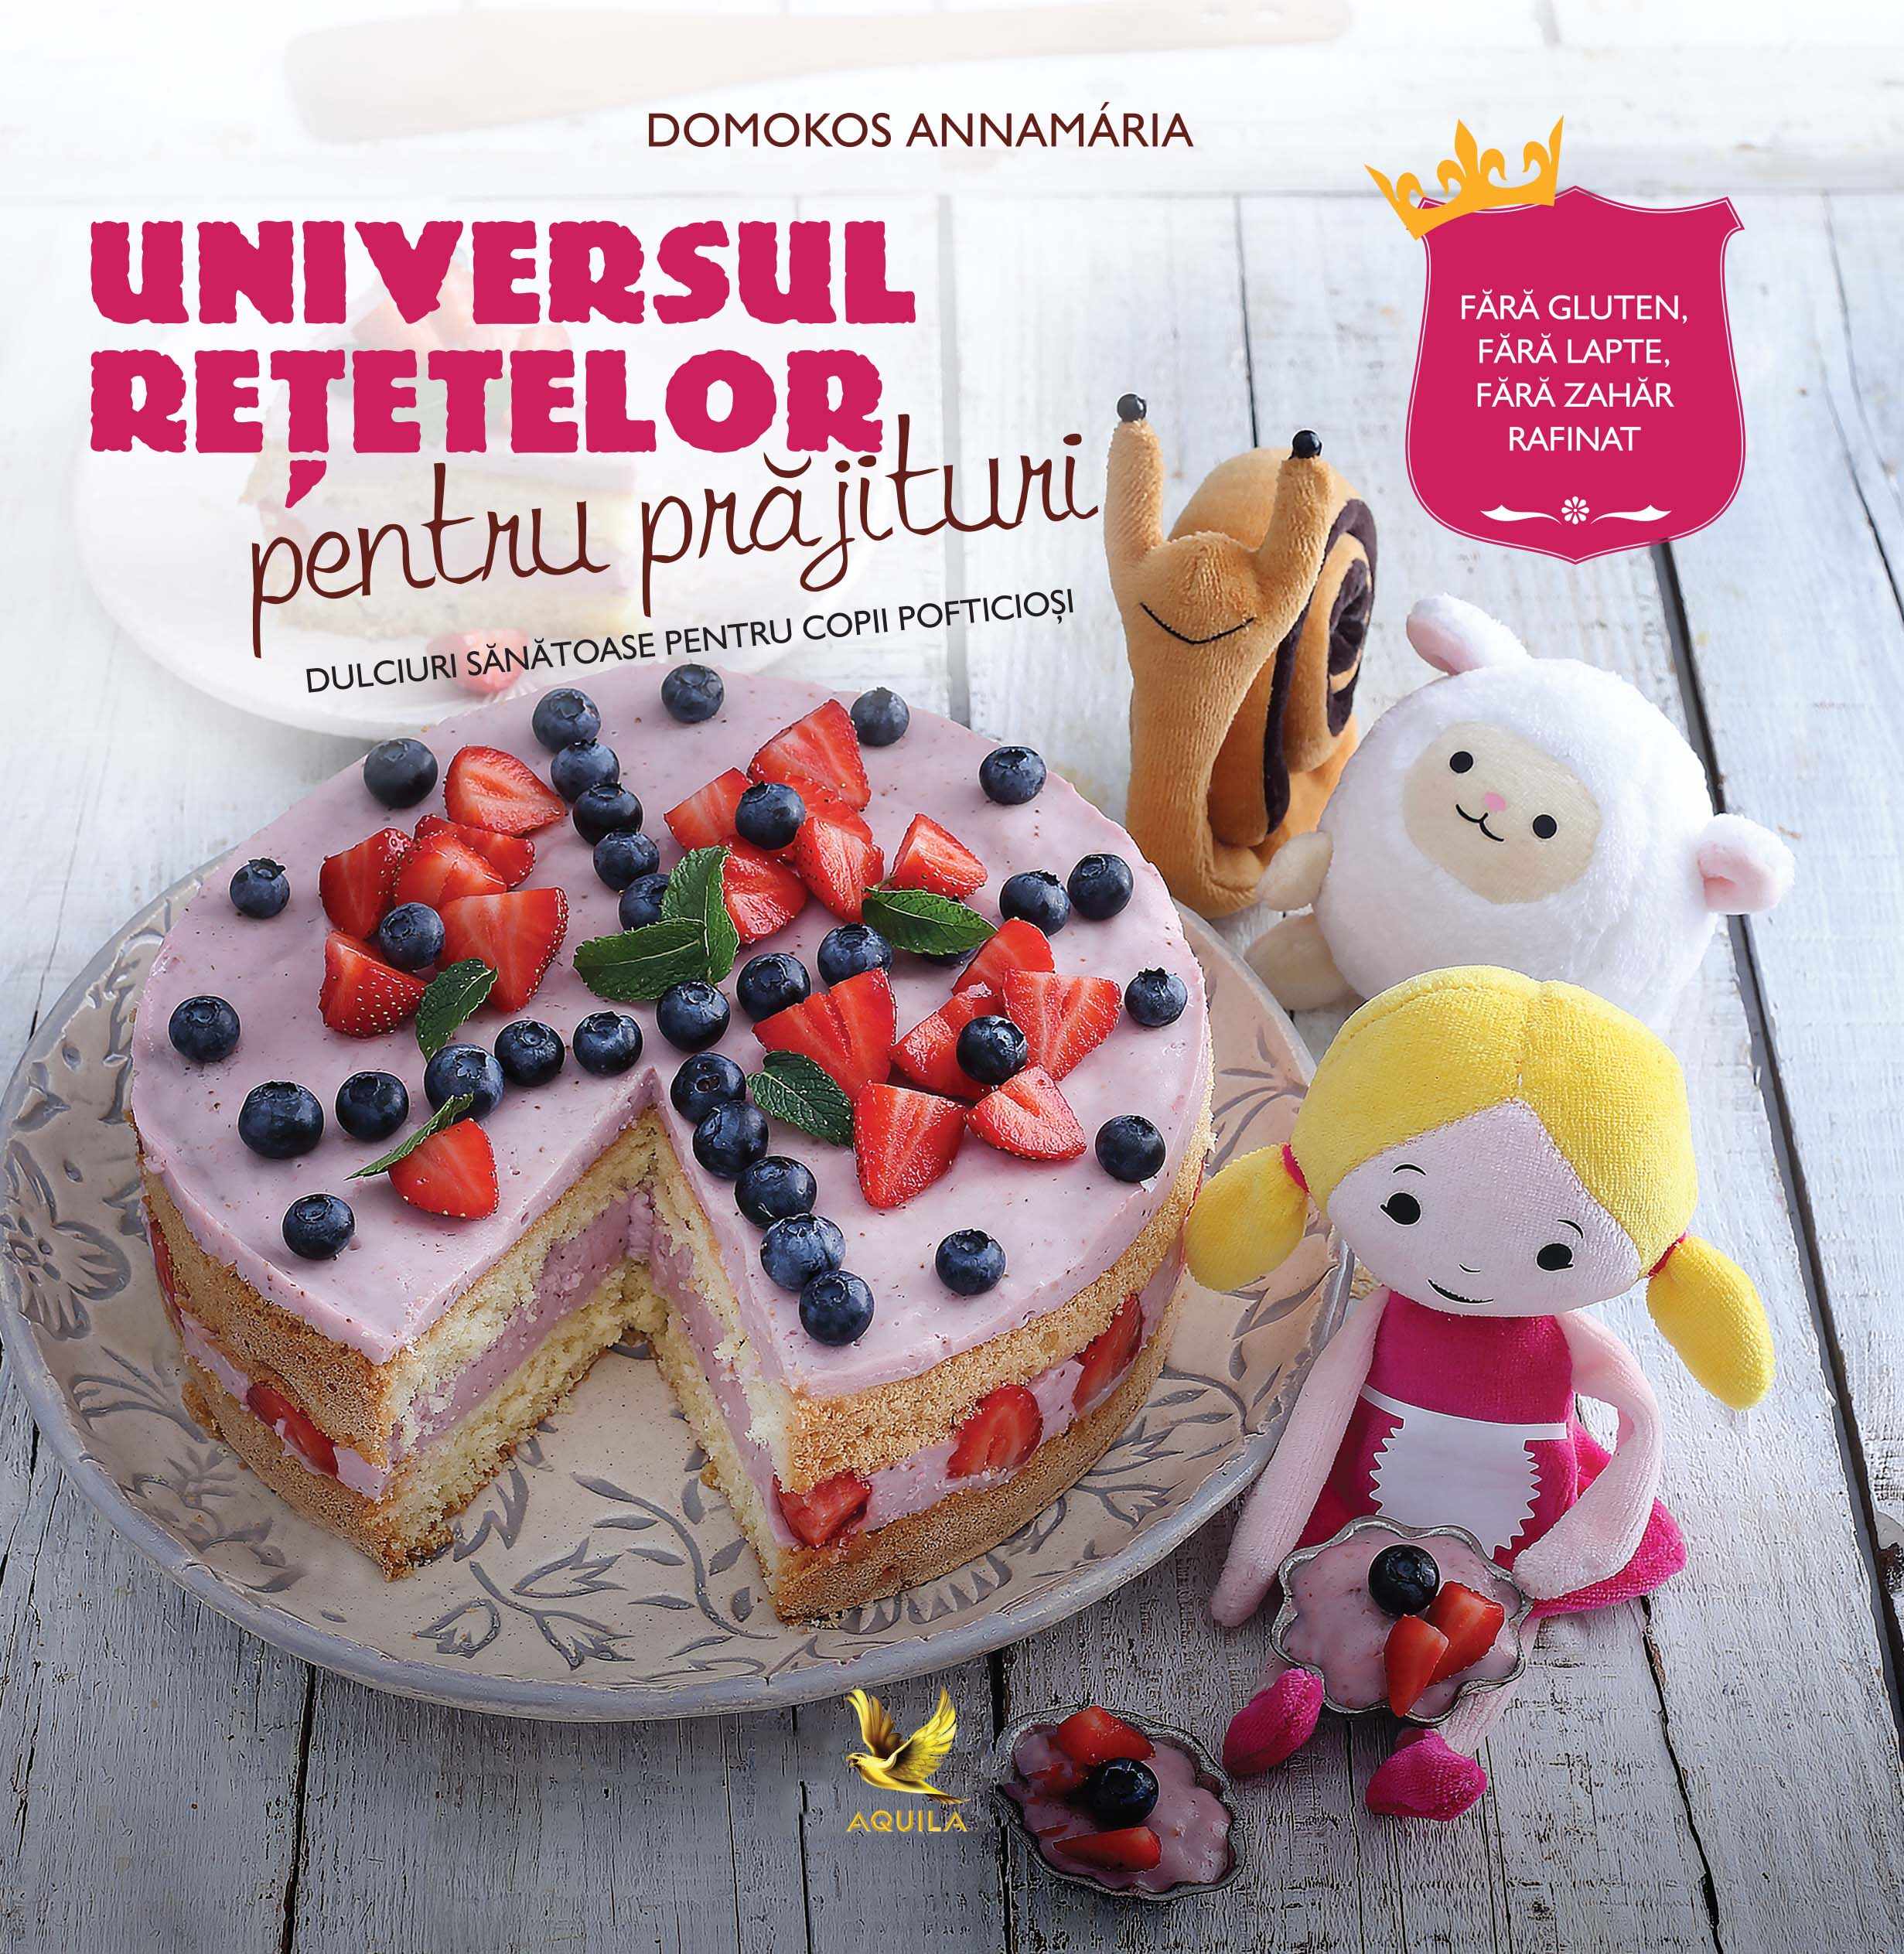 Universul retetelor pentru prajituri - dulciuri sanatoase pentru copii pofticiosi | Domokos Annamaria